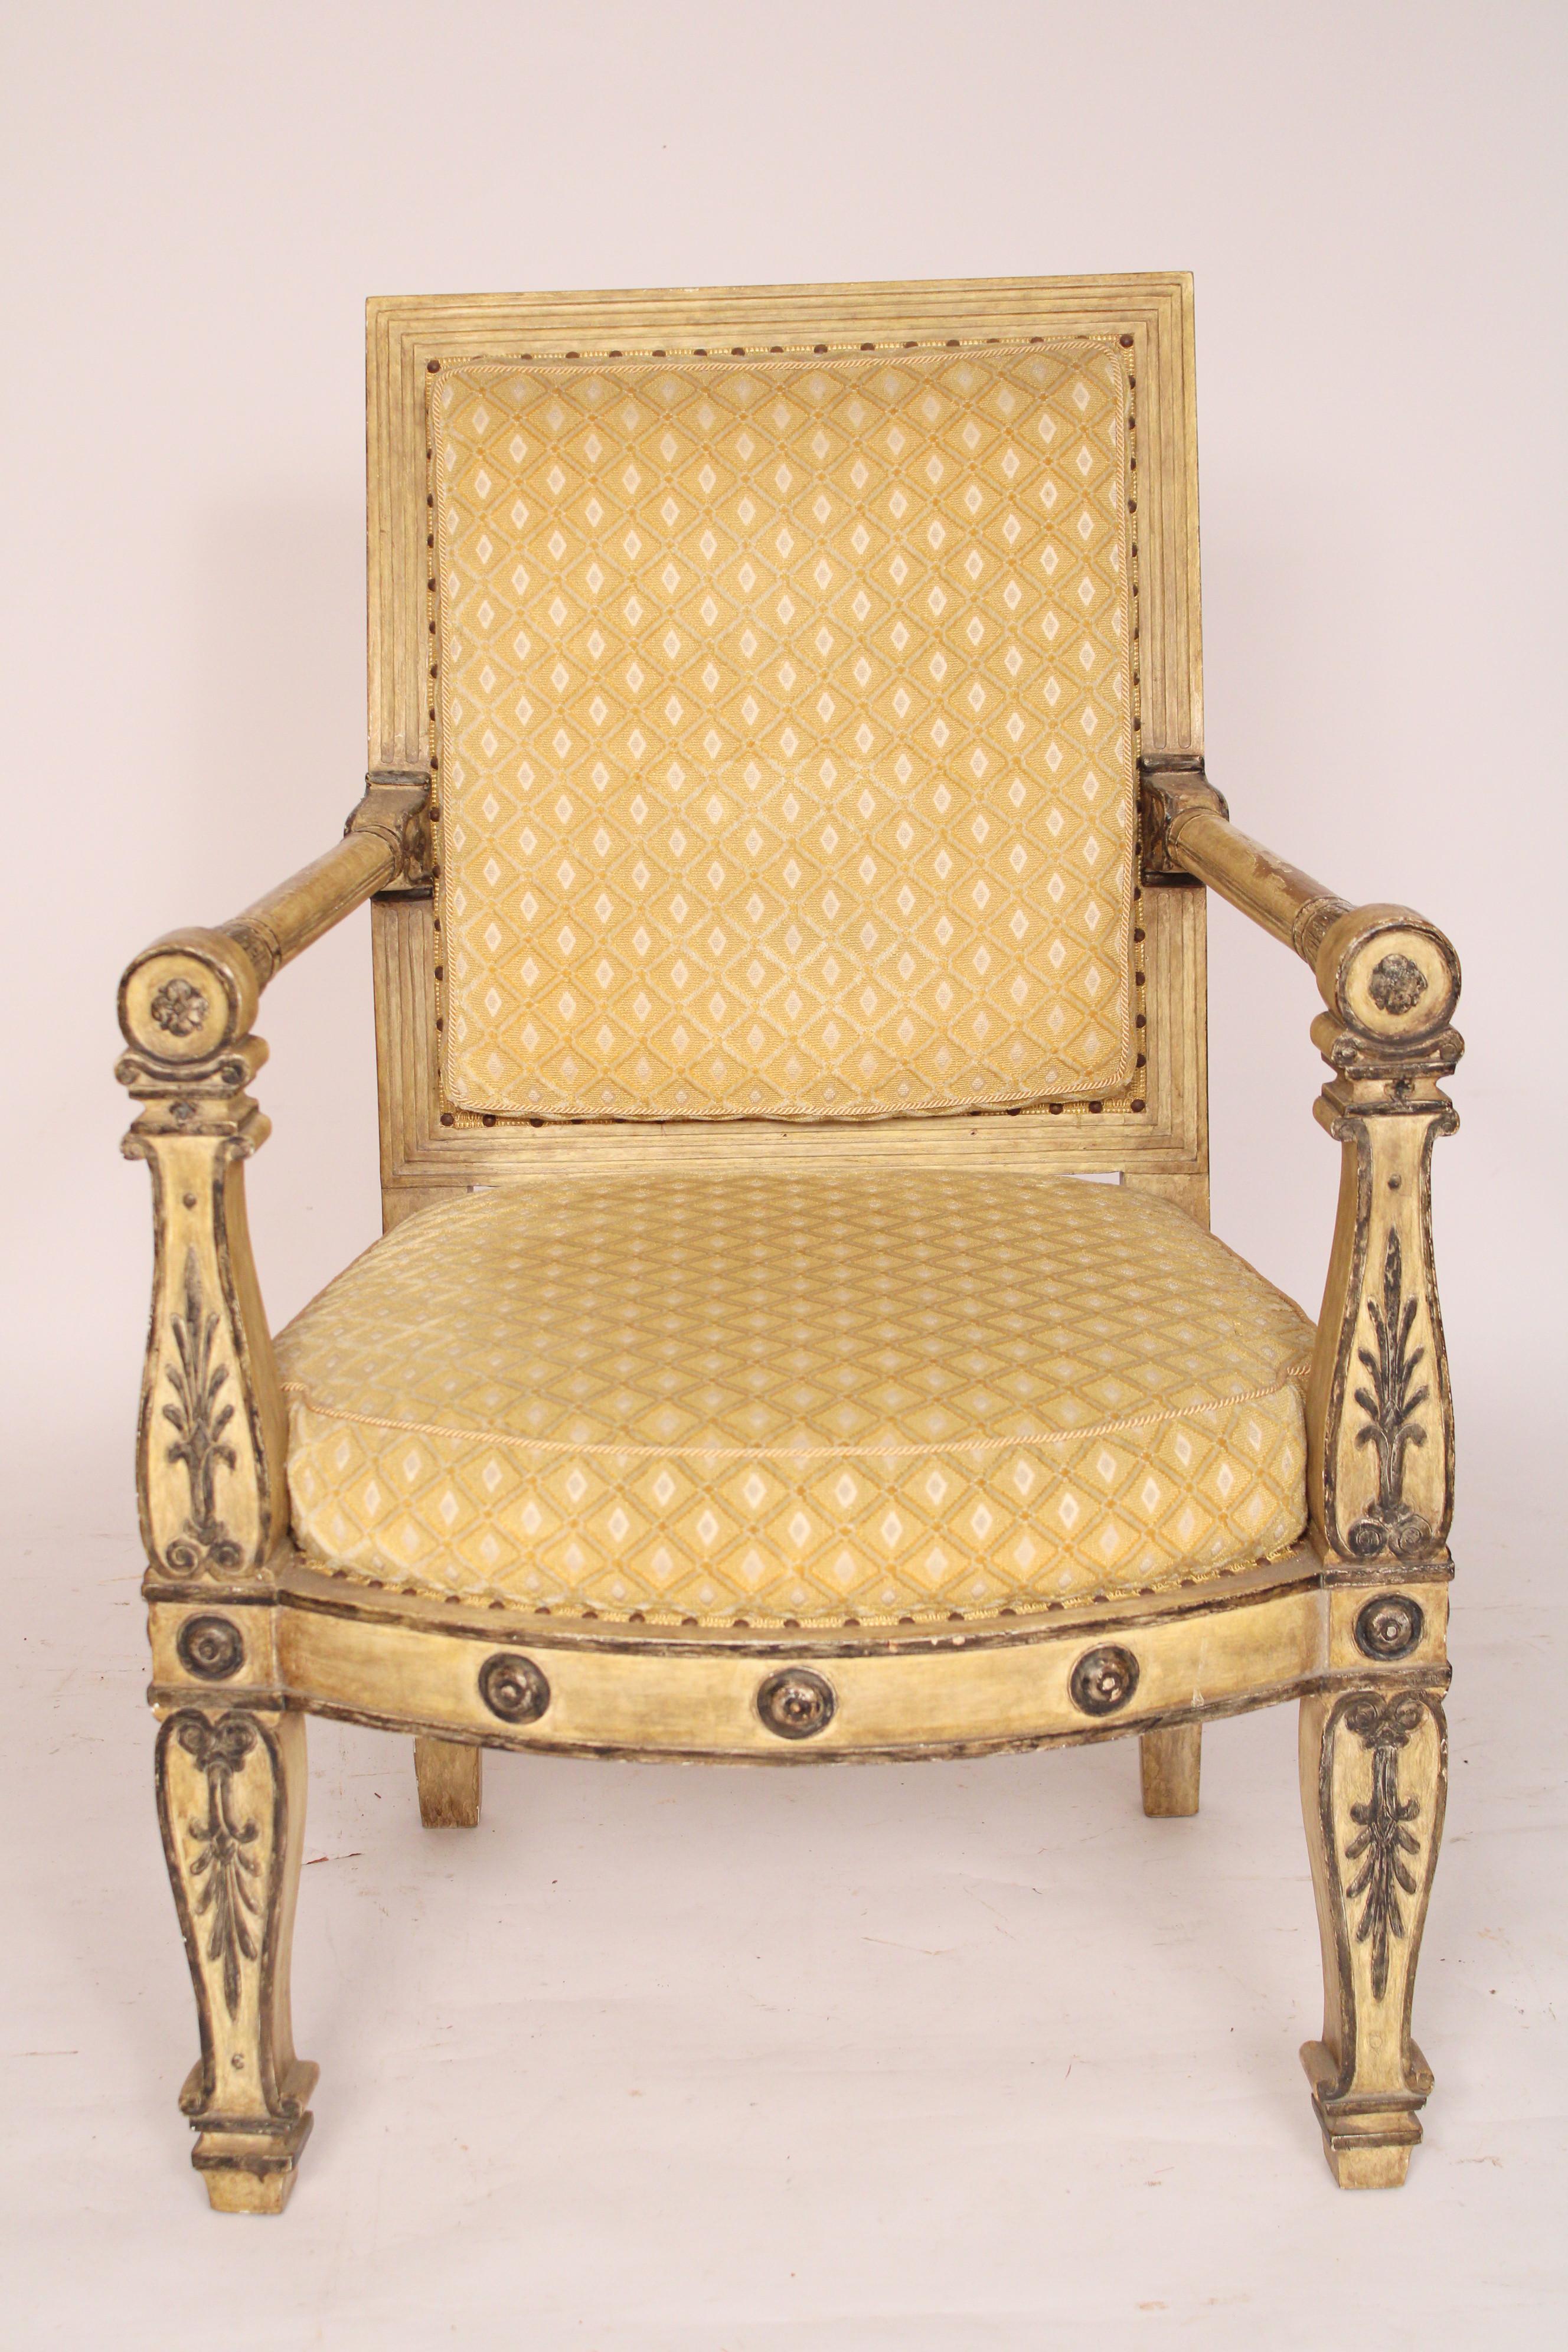 Bemalter Sessel im Empire-Stil, ca. Ende 20. Mit absichtlich verunstalteter Farbe, um das Alter zu imitieren. Hendrix und Allardyce zugeschrieben, 